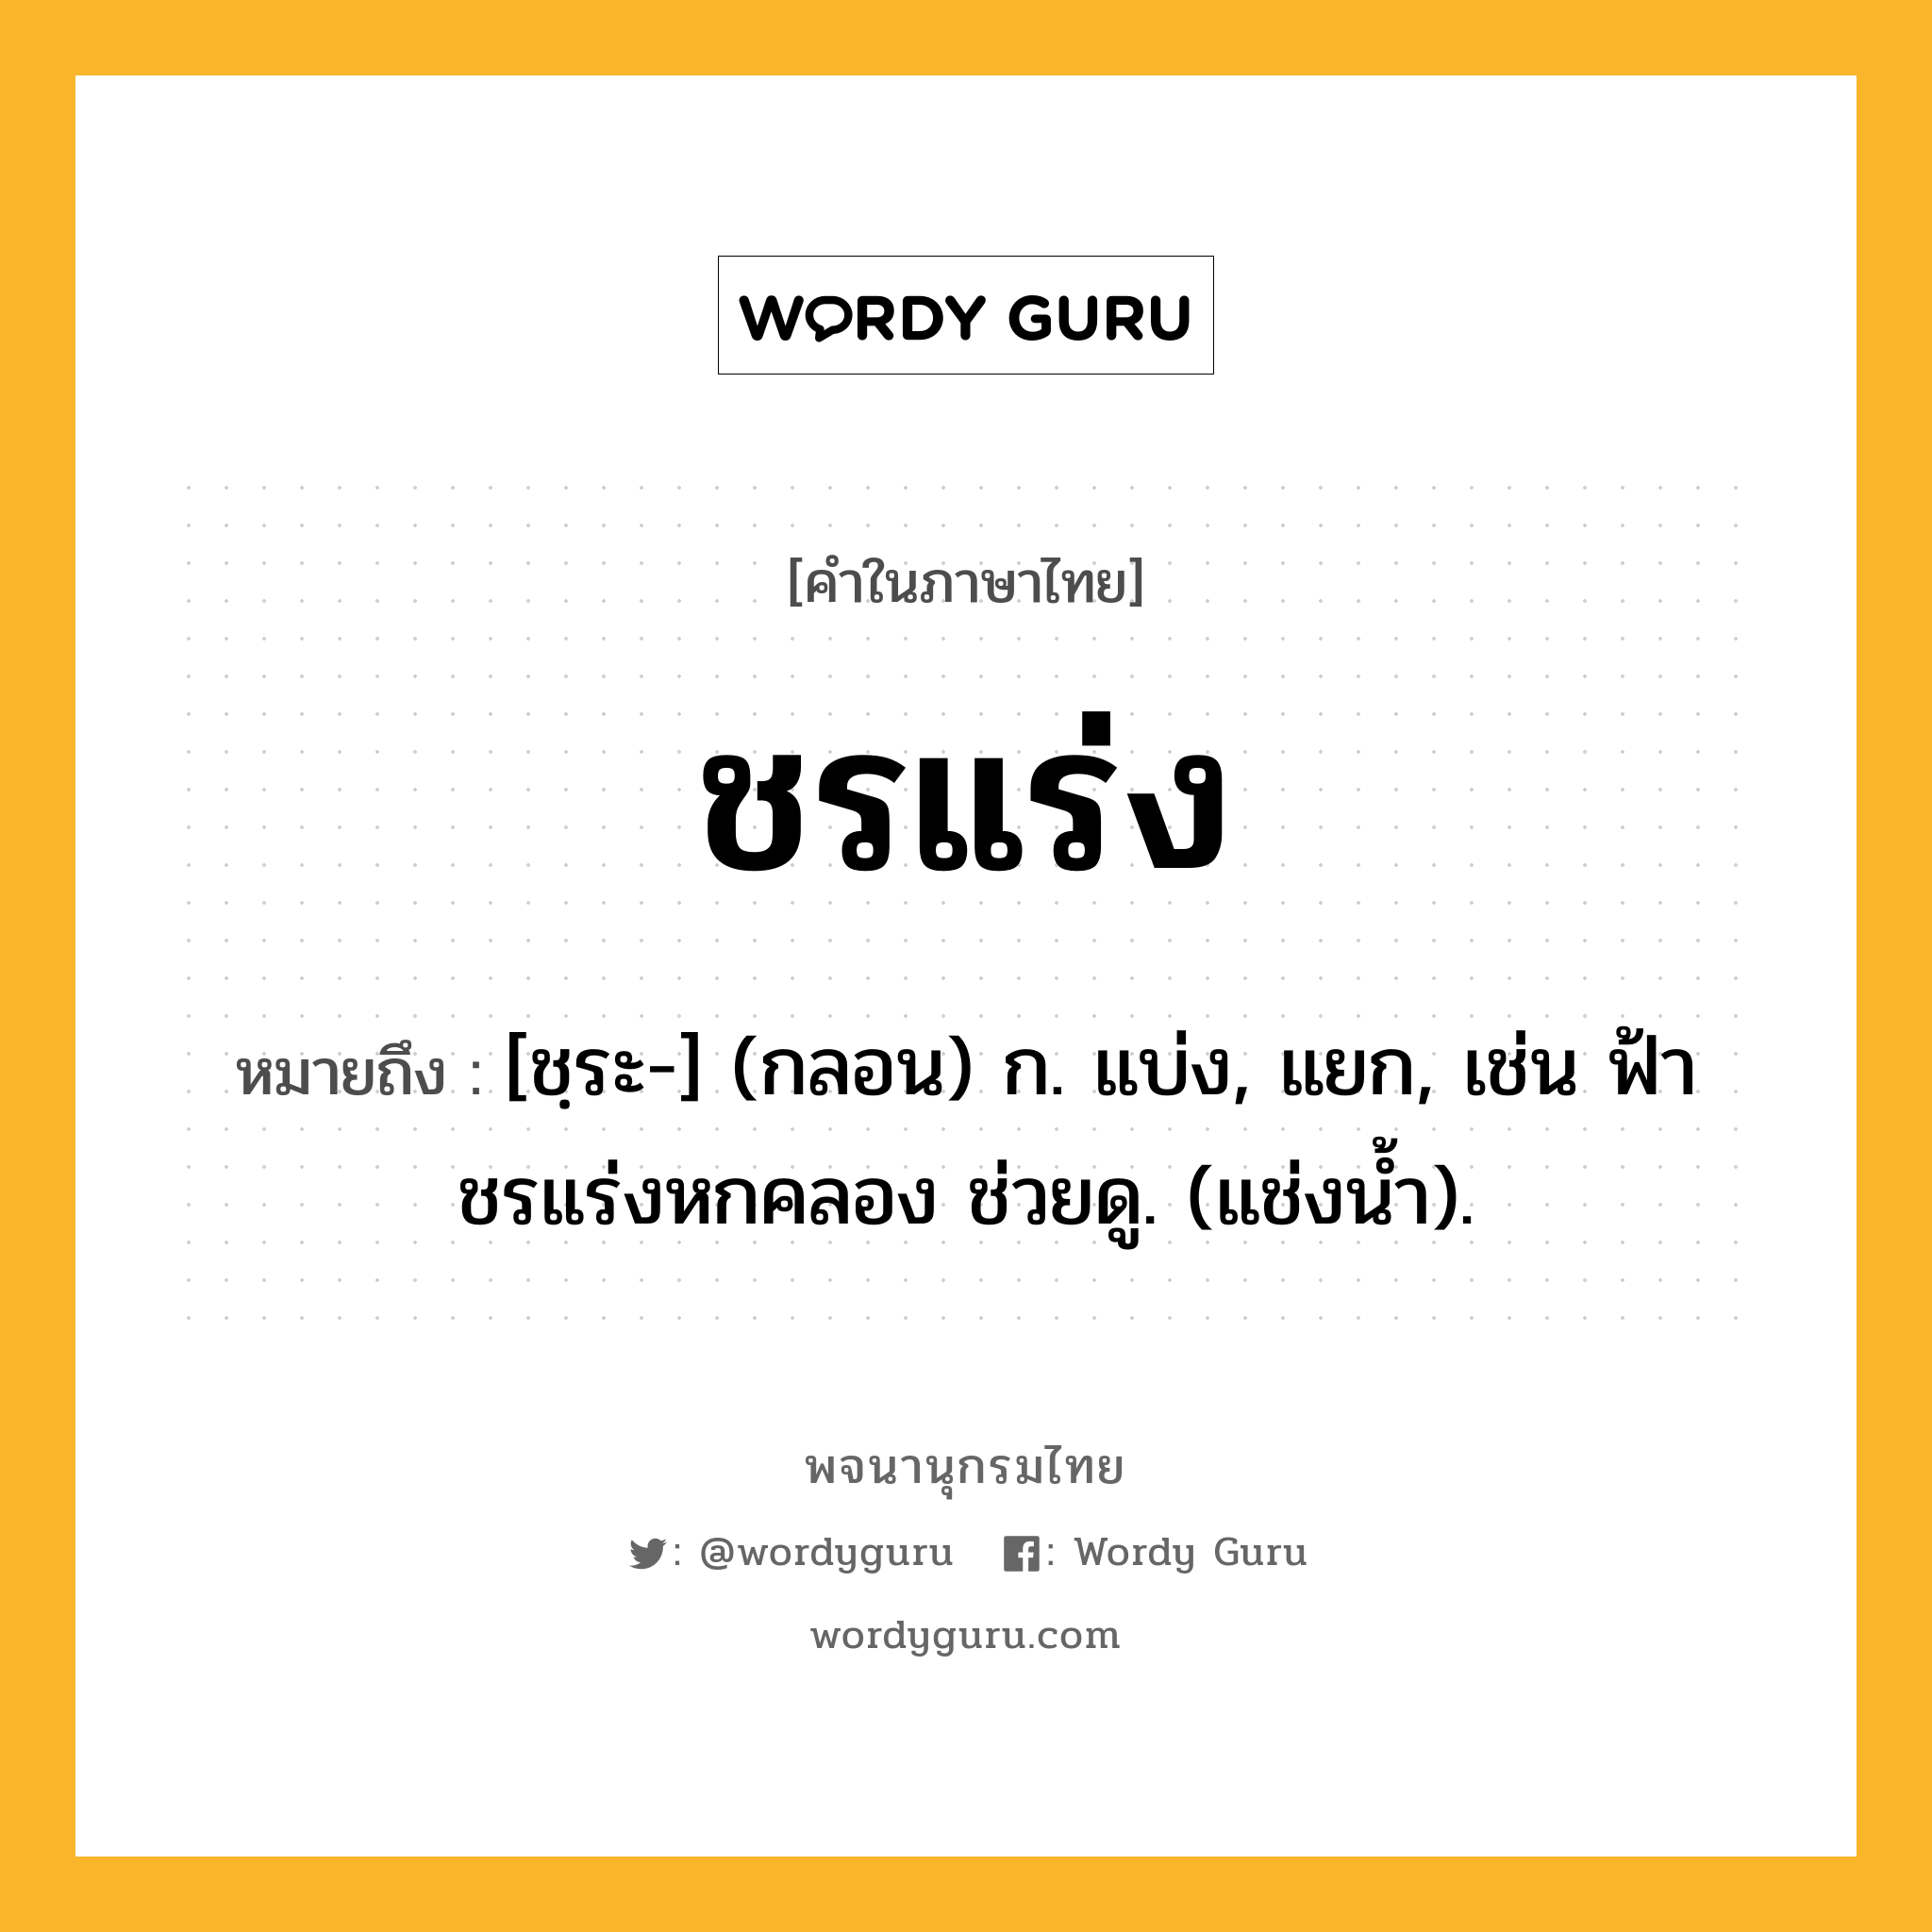 ชรแร่ง ความหมาย หมายถึงอะไร?, คำในภาษาไทย ชรแร่ง หมายถึง [ชฺระ-] (กลอน) ก. แบ่ง, แยก, เช่น ฟ้าชรแร่งหกคลอง ช่วยดู. (แช่งนํ้า).